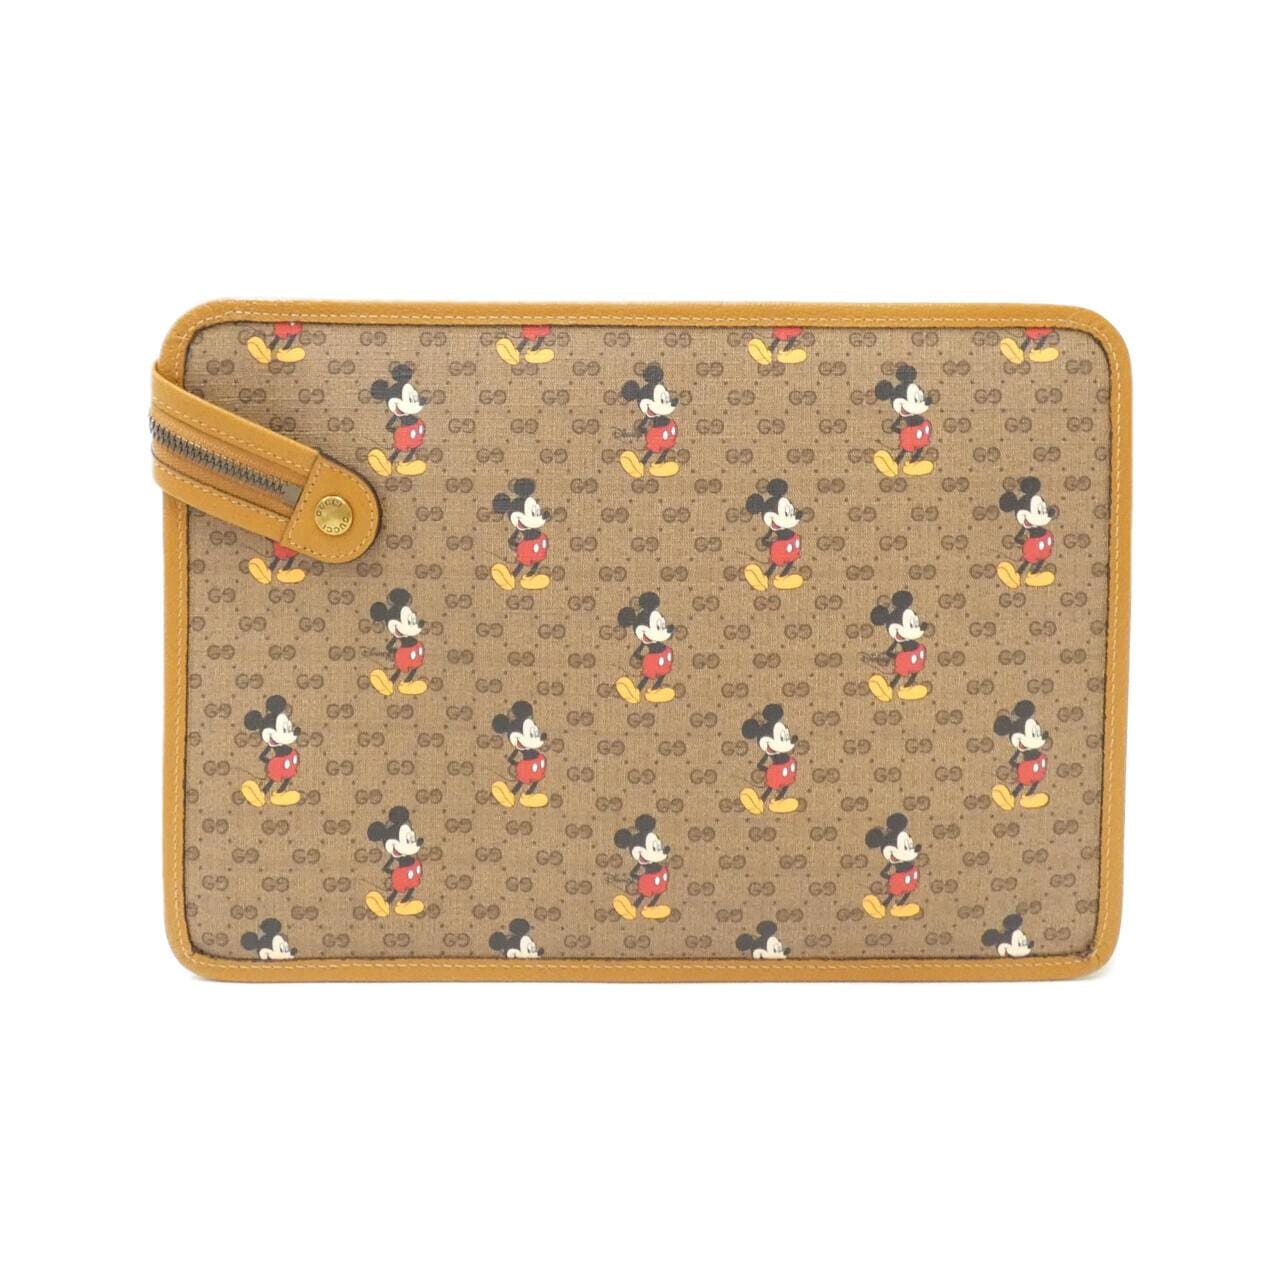 [Unused items] Gucci 602552 HWUBM bag